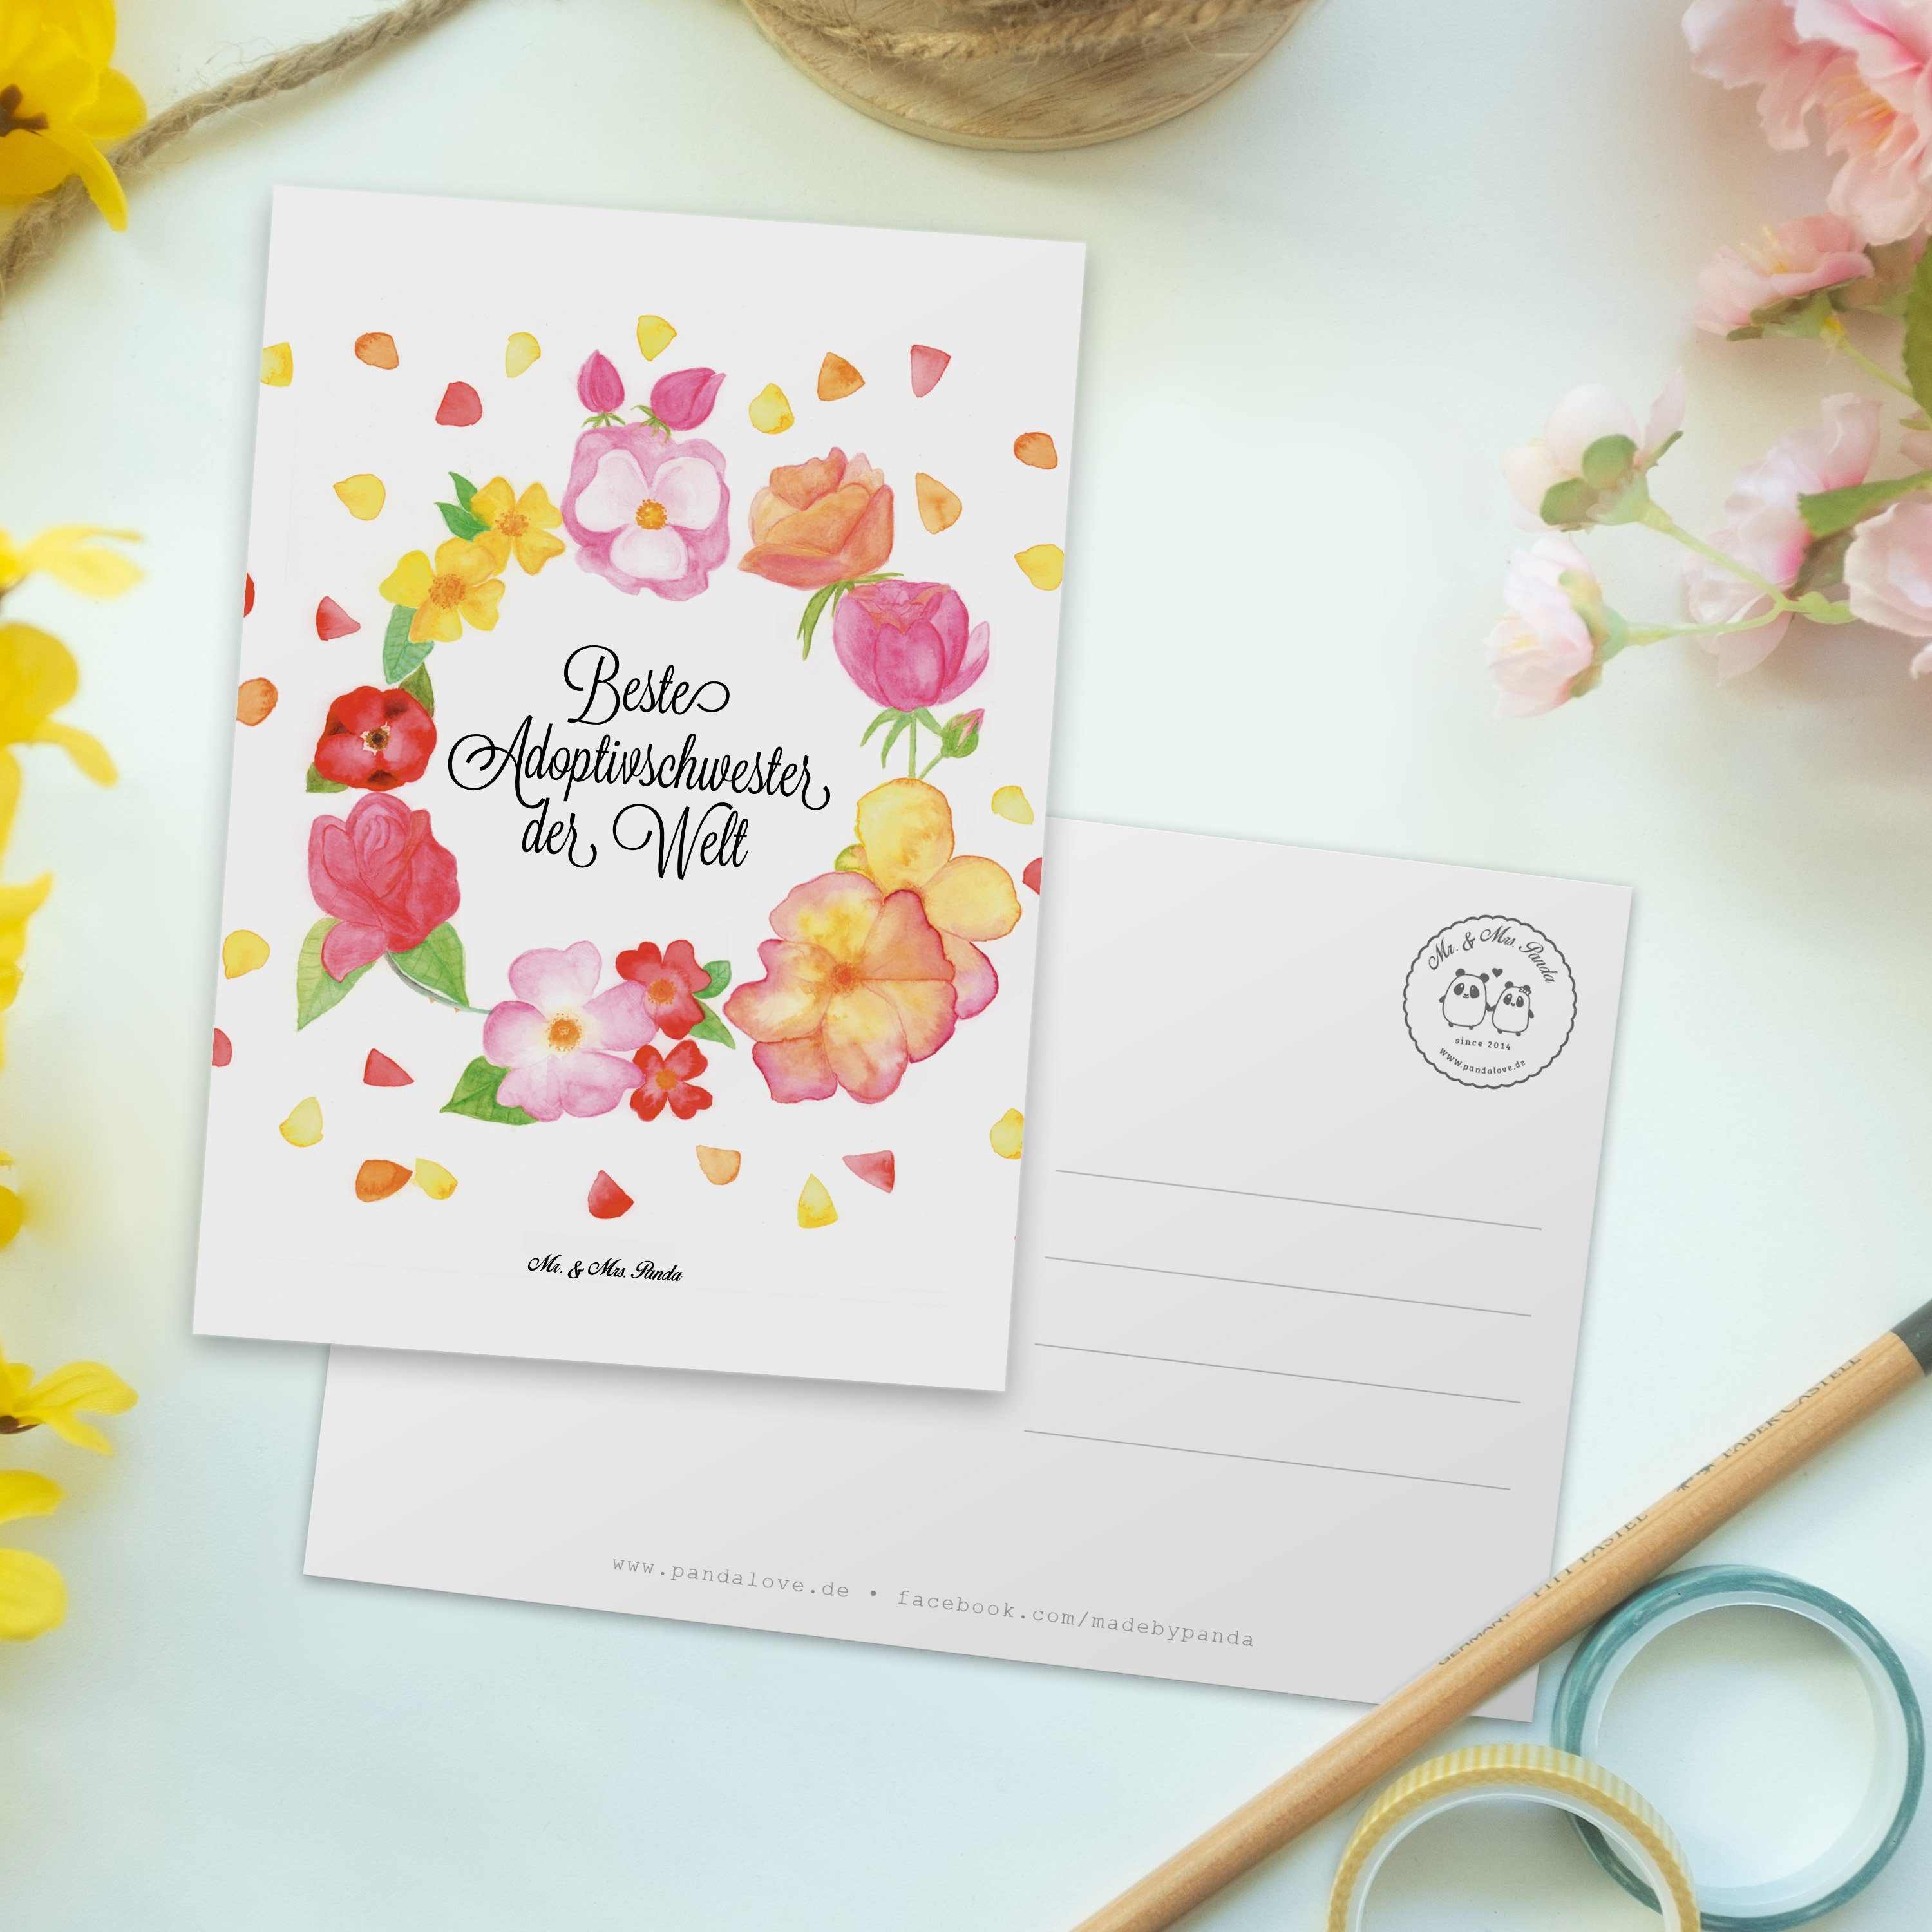 Mr. & Mrs. Weiß - Liebe Postkarte Adoptivschwester Panda - Blumen Flower, Einla Karte, Geschenk